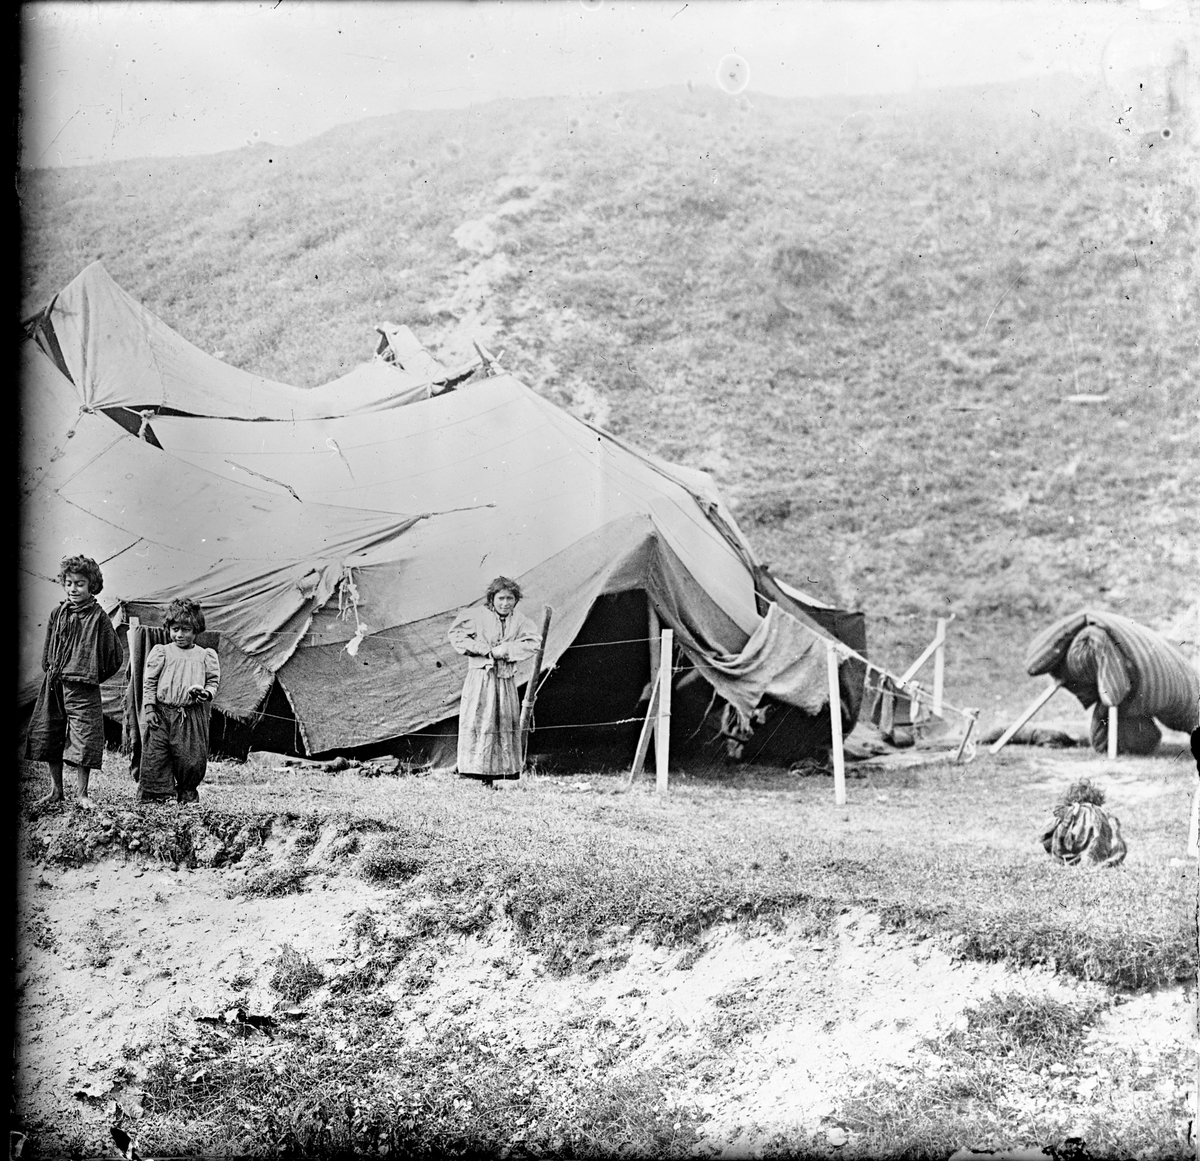 I en backe har ett romskt sällskap slagit läger. Ett tält syns i bakgrunden och framför det tre barn i olika åldrar.